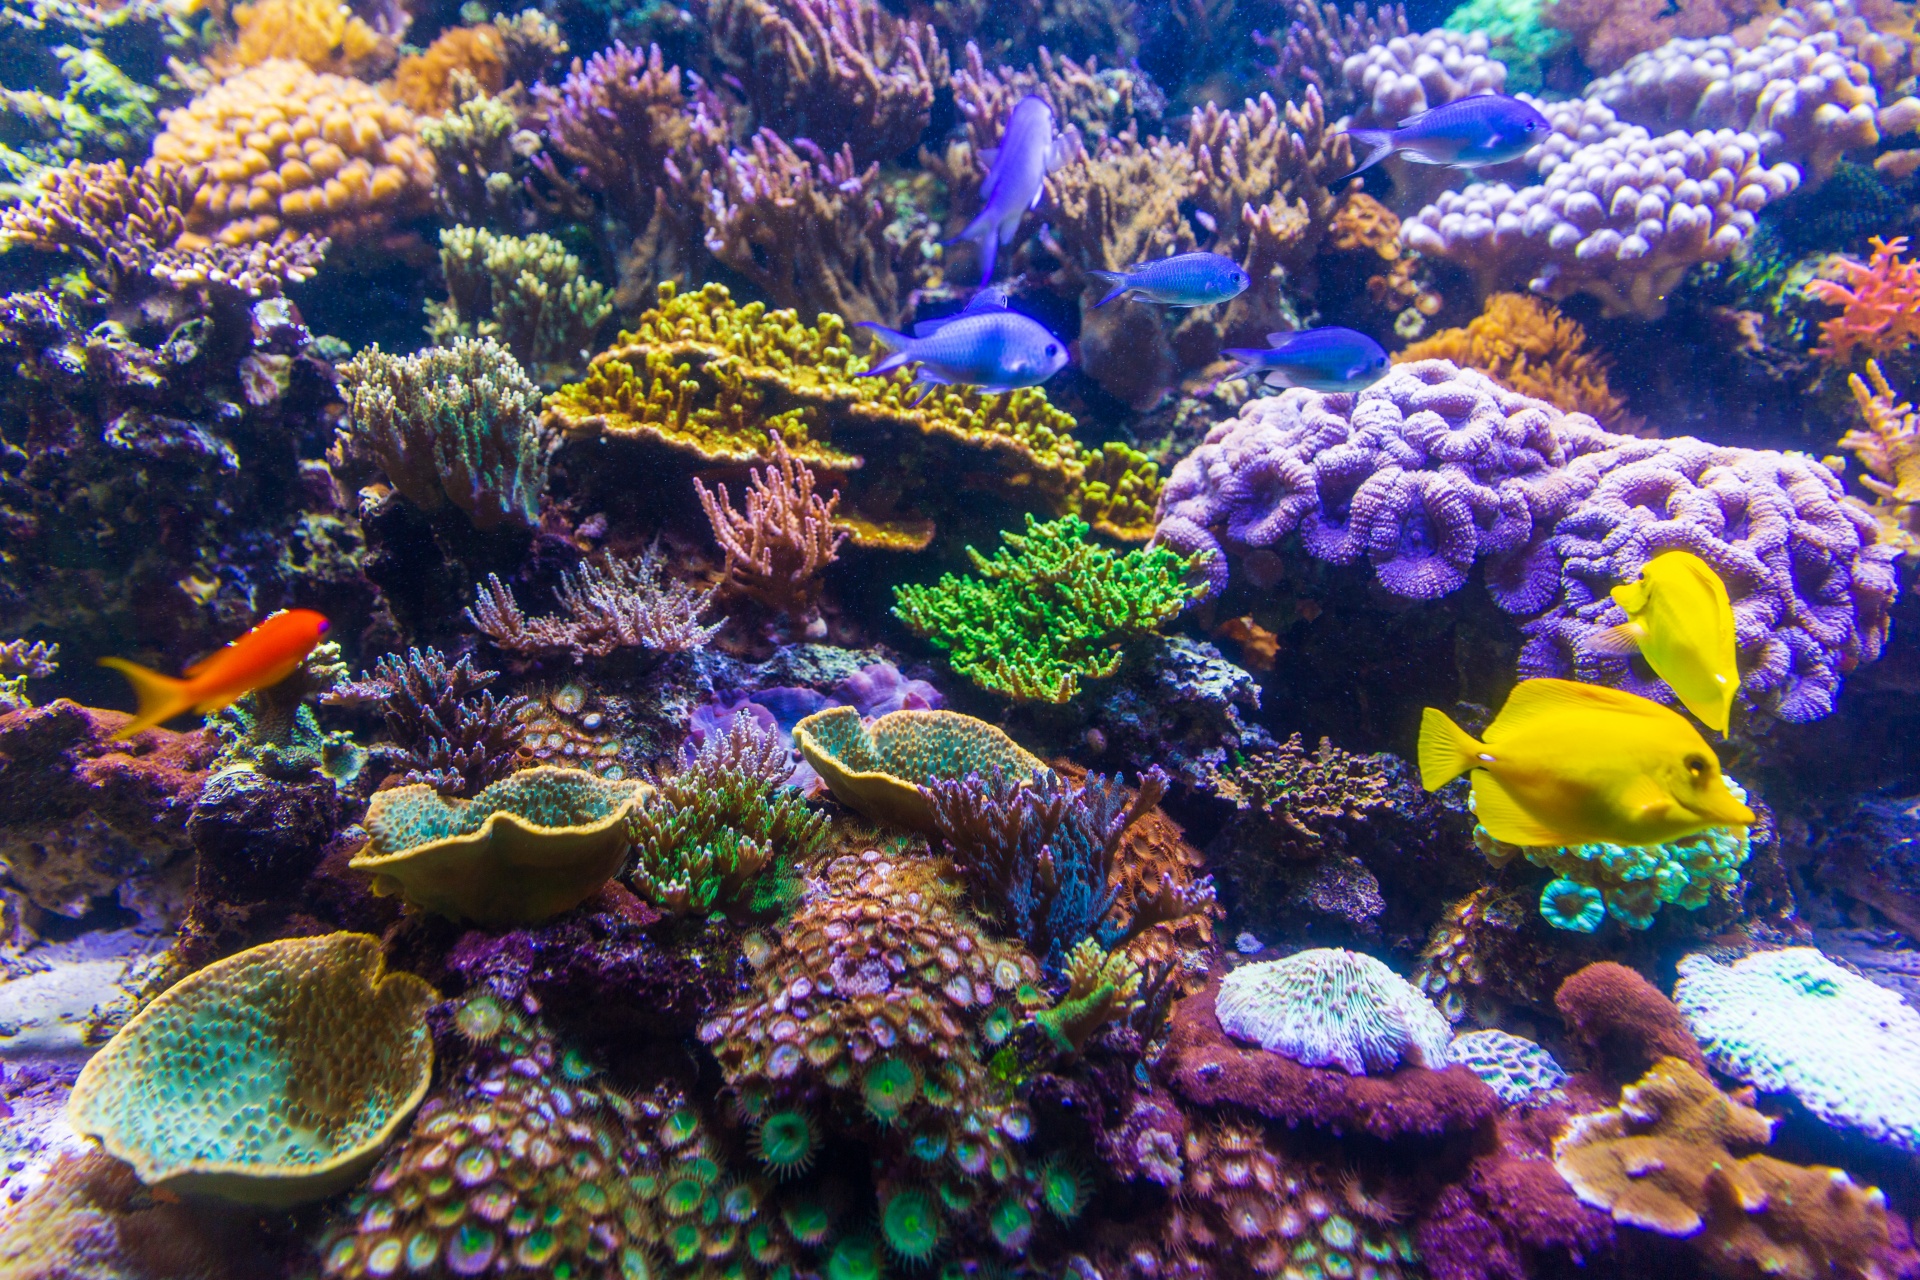 サンゴ礁 無料画像 - Public Domain Pictures